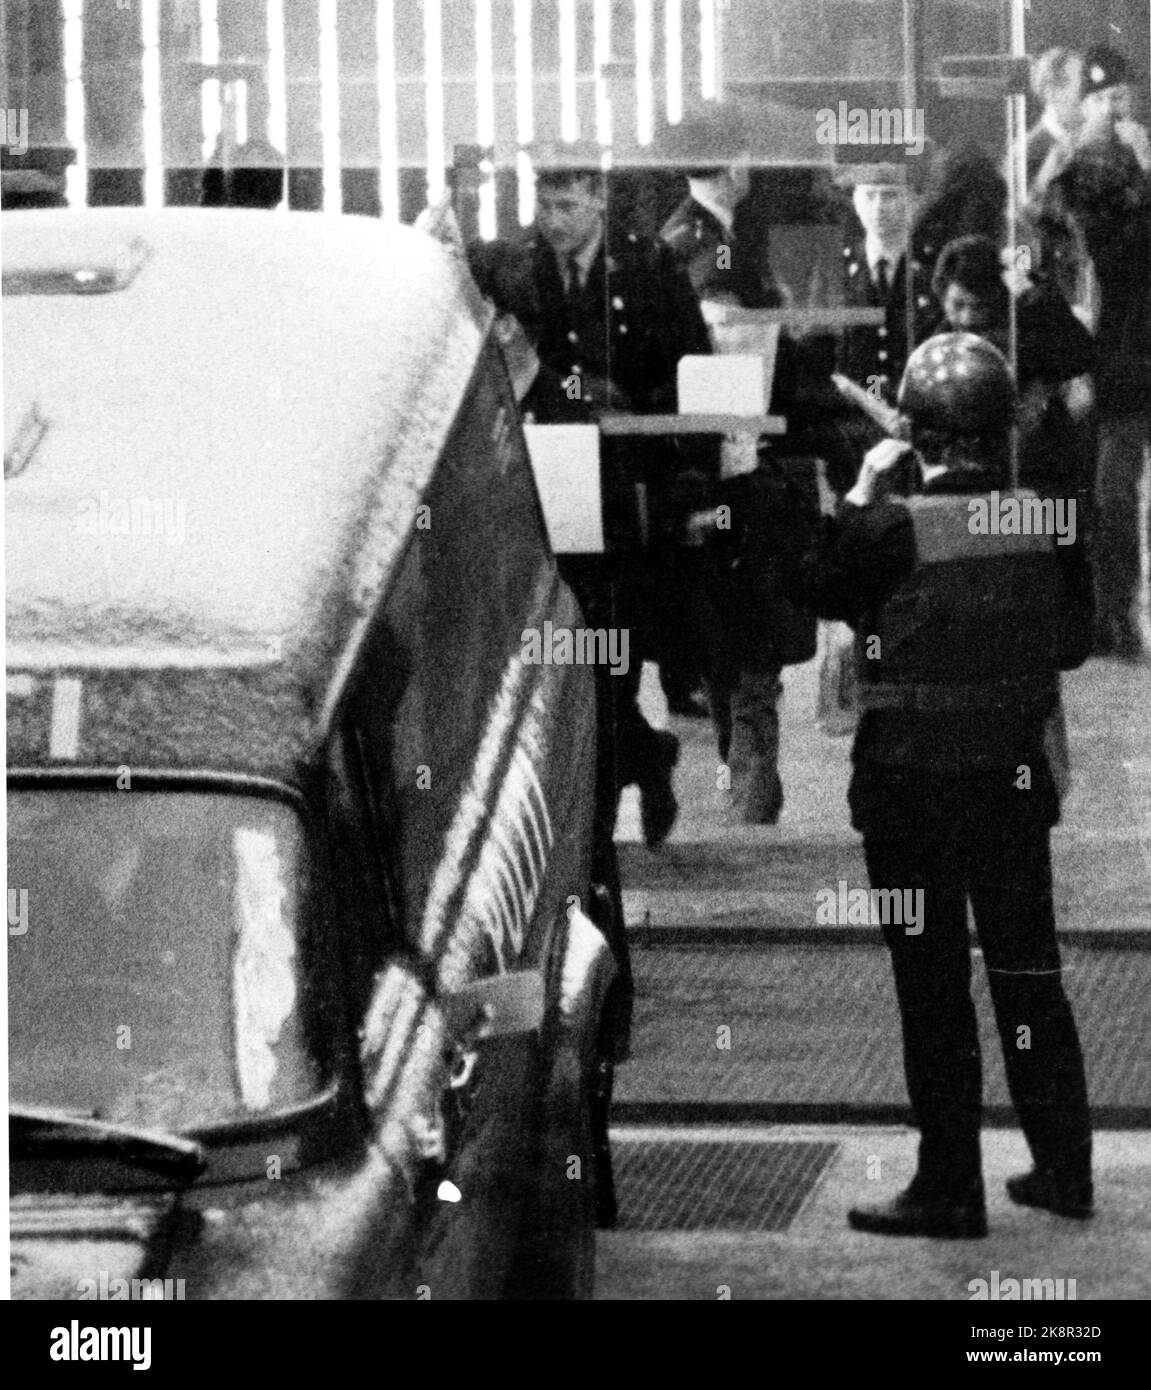 Oslo 19740109. Il caso Lillehammer - processo a seguito dell'assassinio di Ahmed Bouchiki a Lillehammer nel 1973. Sei agenti israeliani sono accusati di partecipare a omicidi deliberati. I quattro imputati maschi sono portati alla macchina di polizia dopo un procedimento giudiziario. Foto NTB / NTB Foto Stock